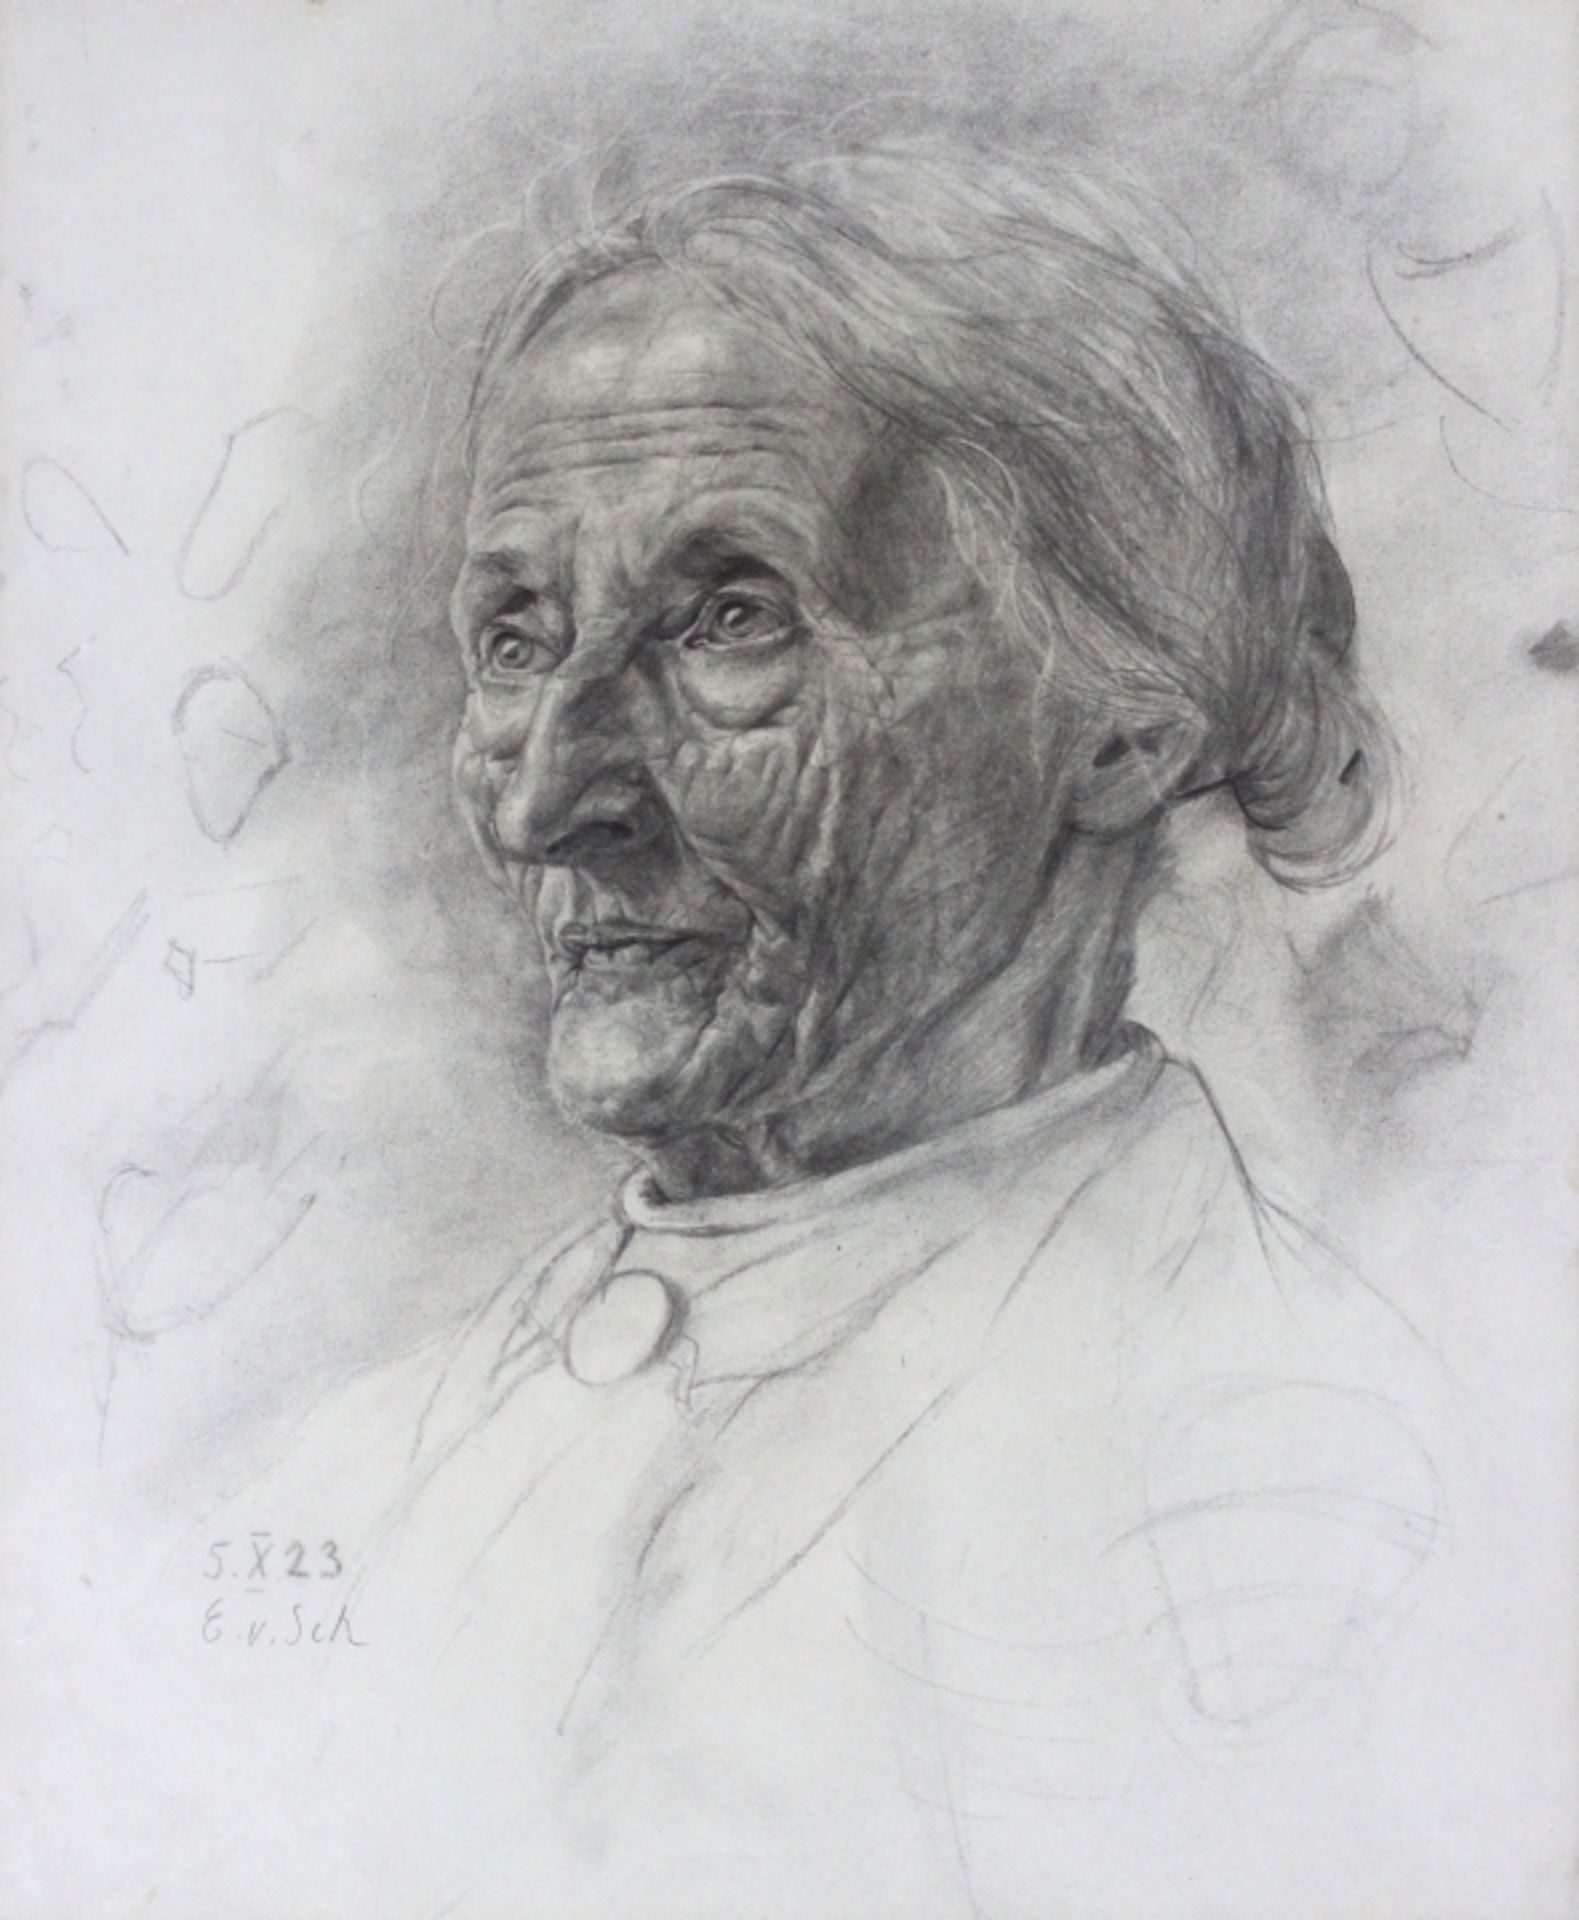 Zeichnung - Erna Sönning geb. Freiin Scheben von Cronfeld (1902-1996 / tätig in Regensburg) "